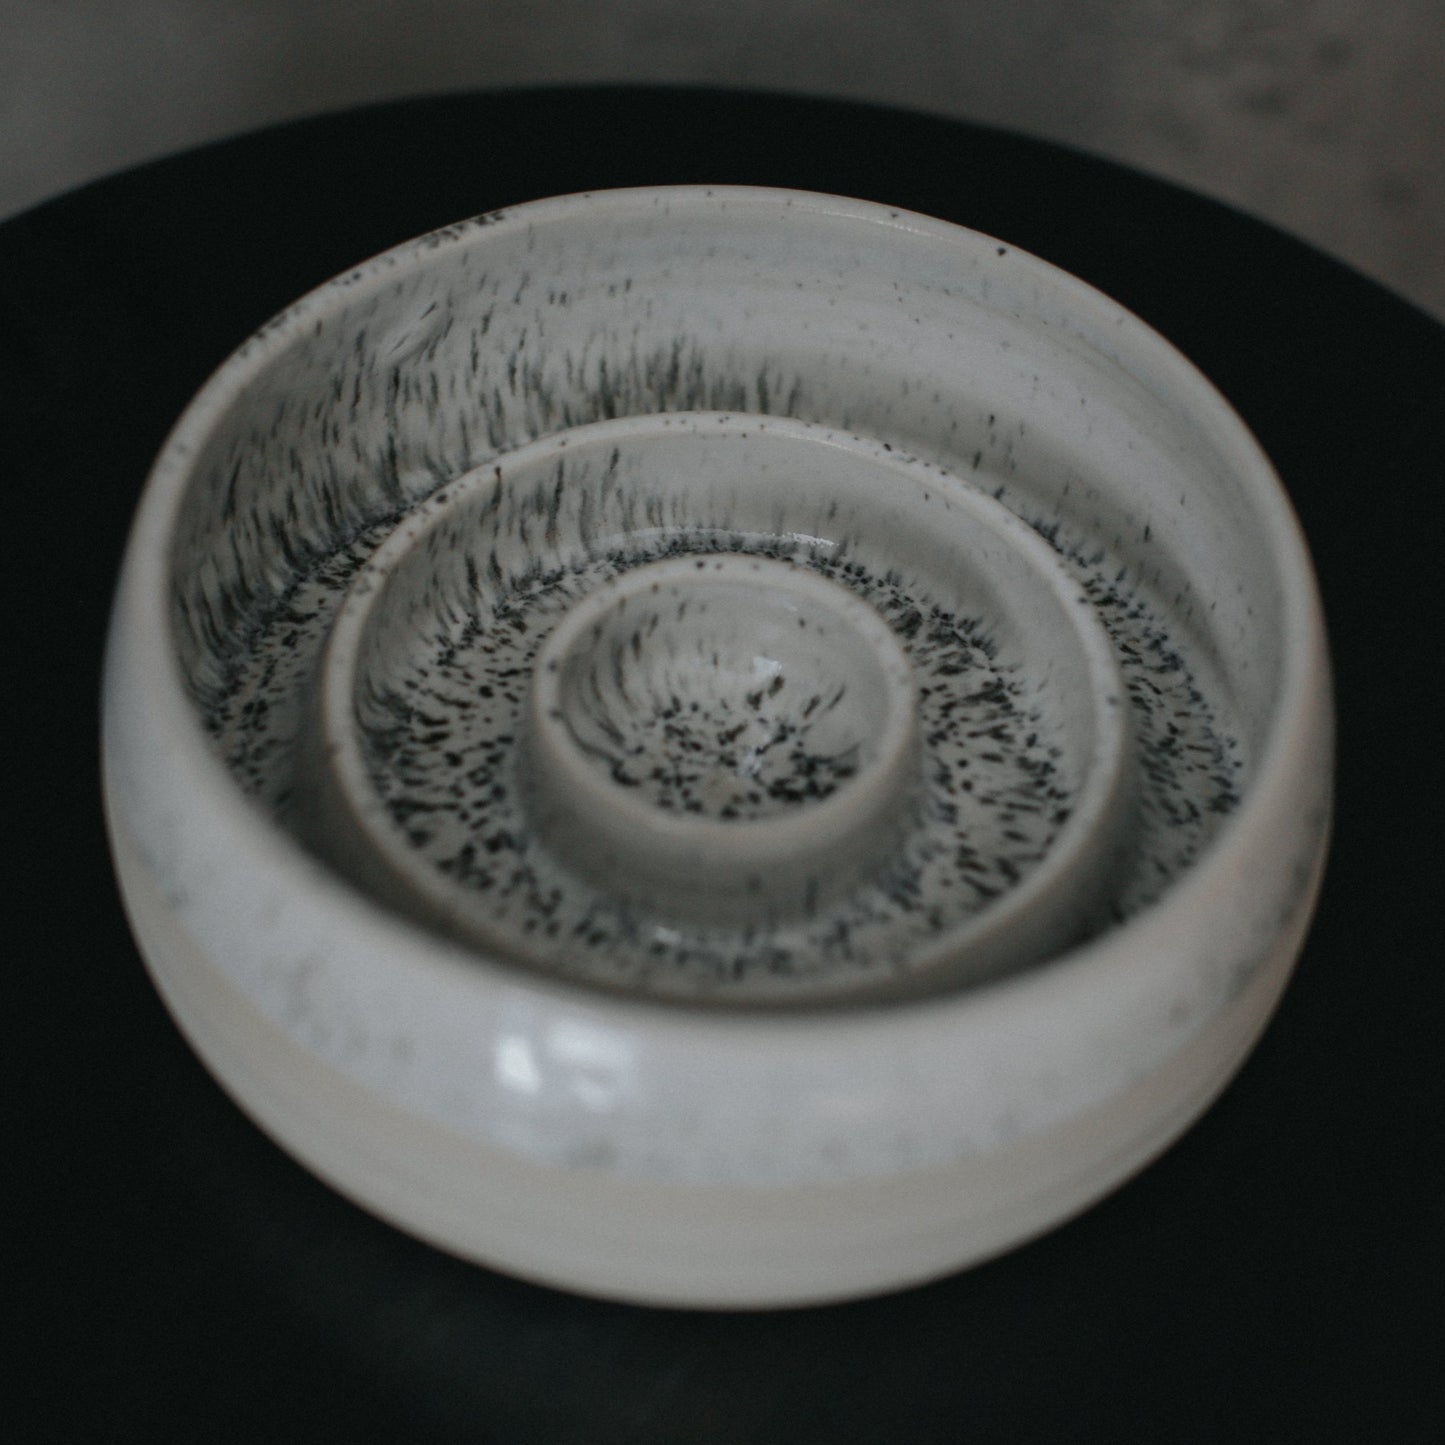 Ceramic slow feeder bowl with speckled glaze (600 ml)